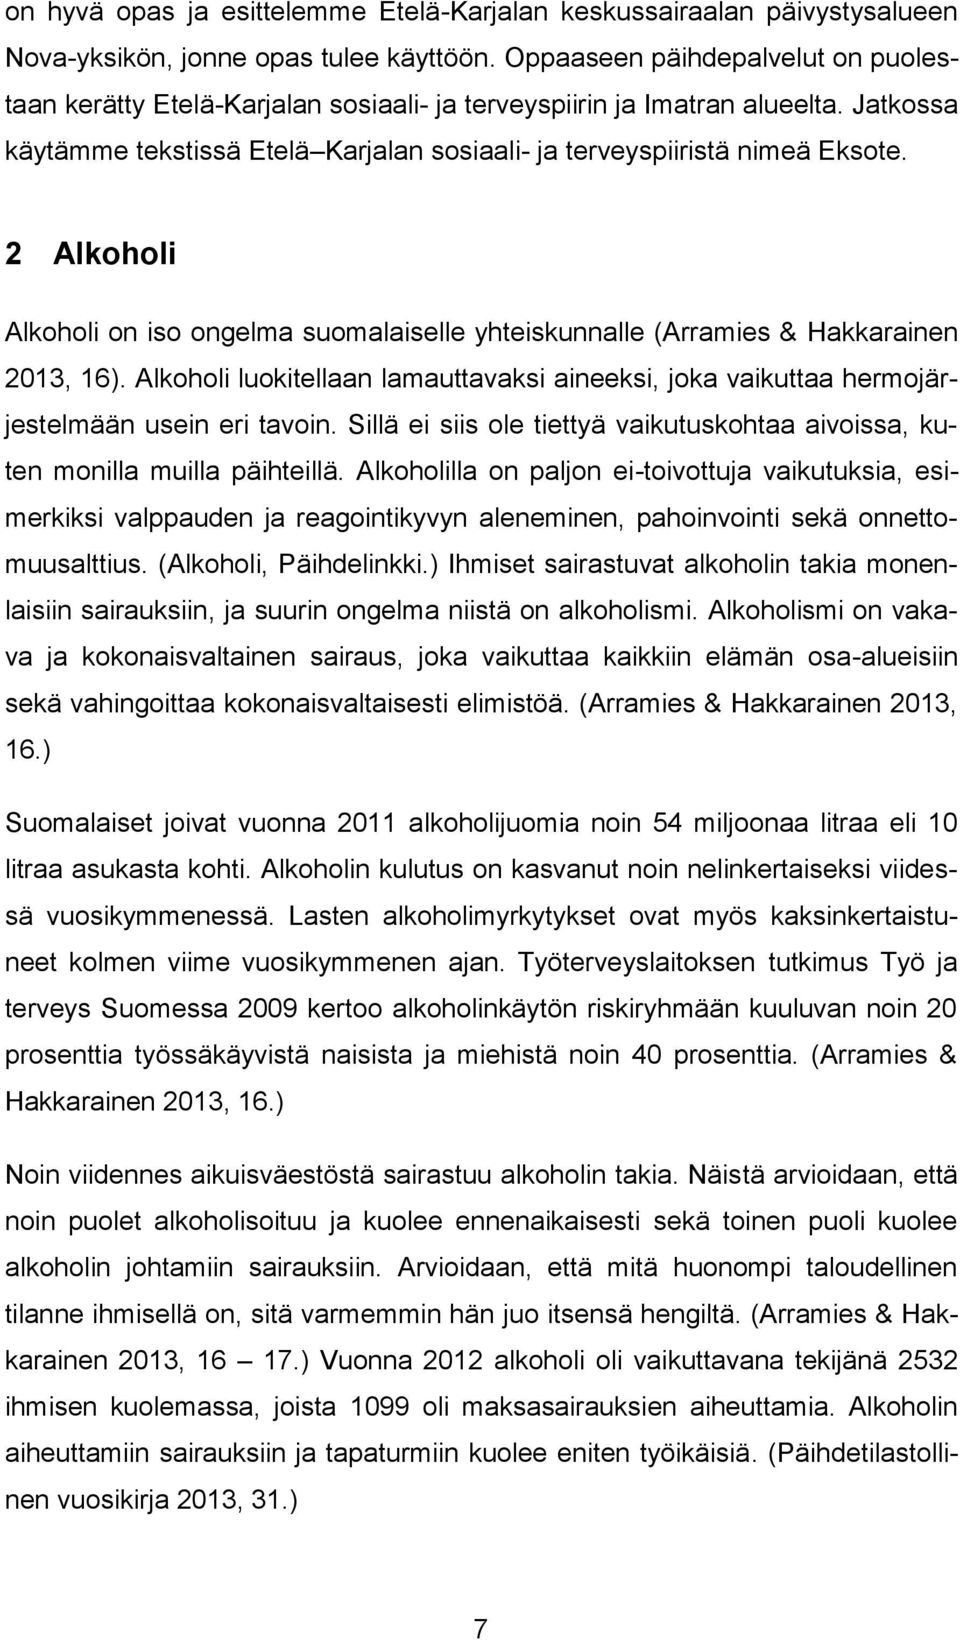 2 Alkoholi Alkoholi on iso ongelma suomalaiselle yhteiskunnalle (Arramies & Hakkarainen 2013, 16). Alkoholi luokitellaan lamauttavaksi aineeksi, joka vaikuttaa hermojärjestelmään usein eri tavoin.